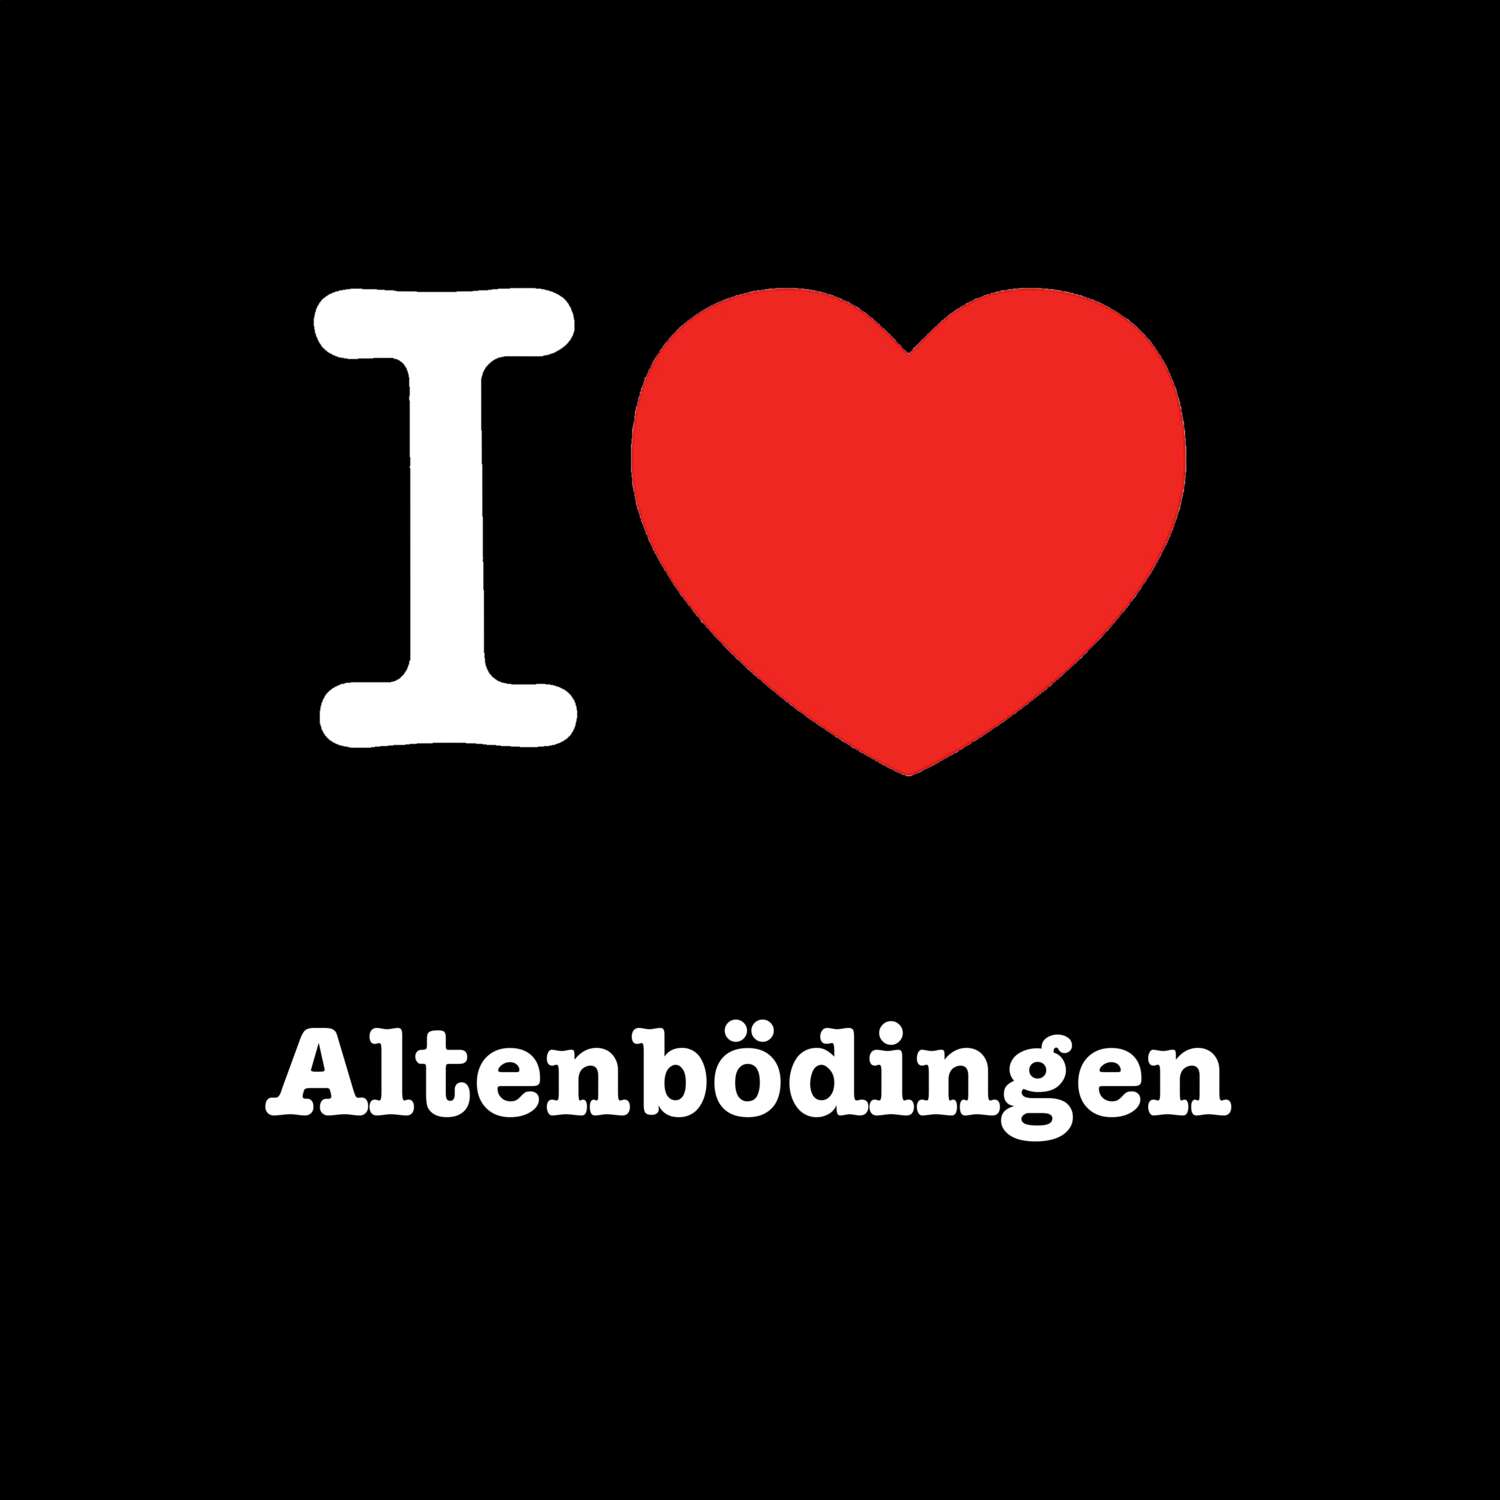 Altenbödingen T-Shirt »I love«